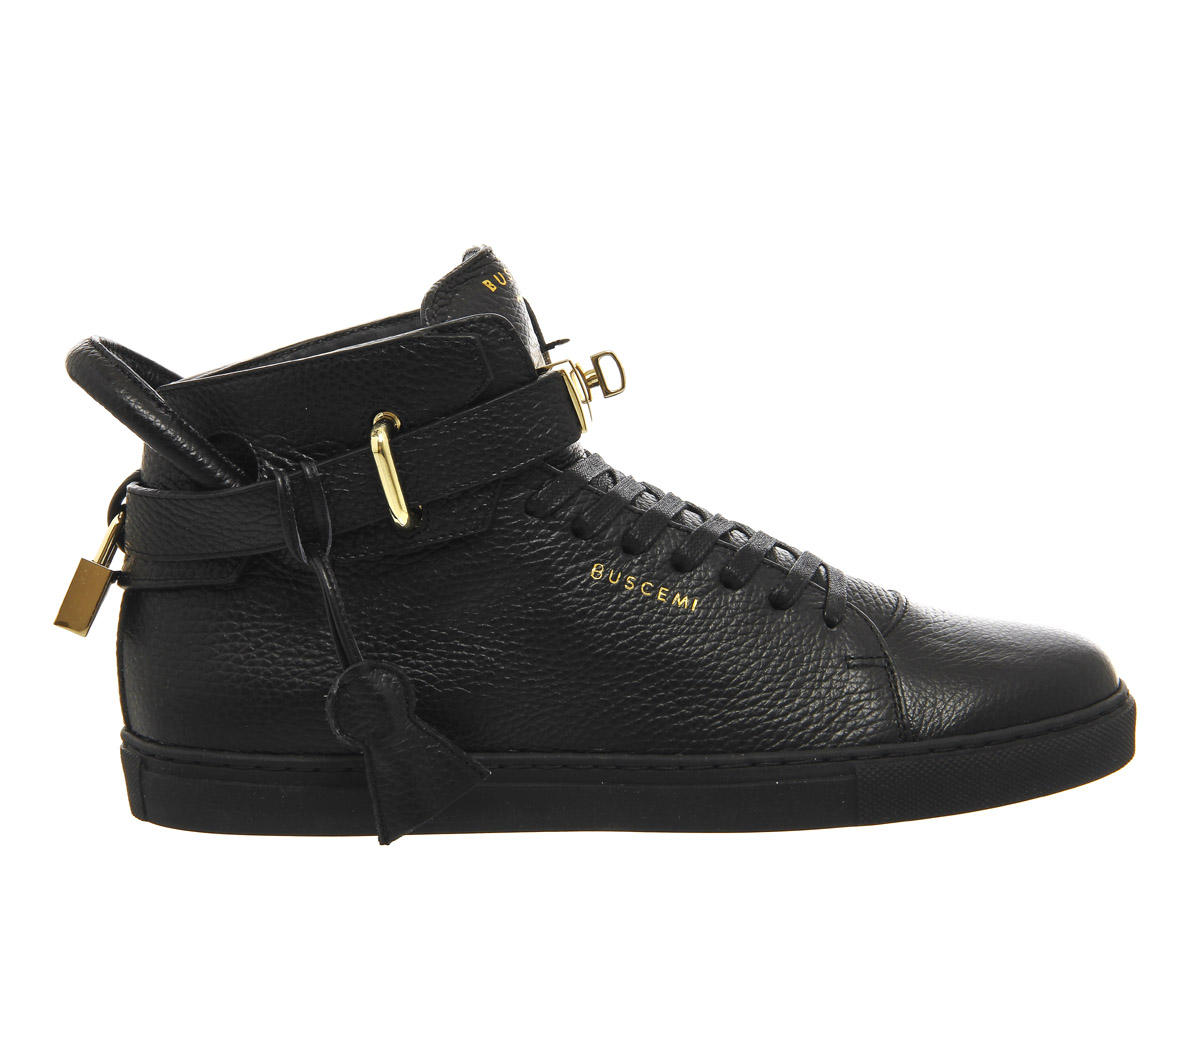 Buscemi 100mm Shoes Black Leather - Men's Premium Sneakers